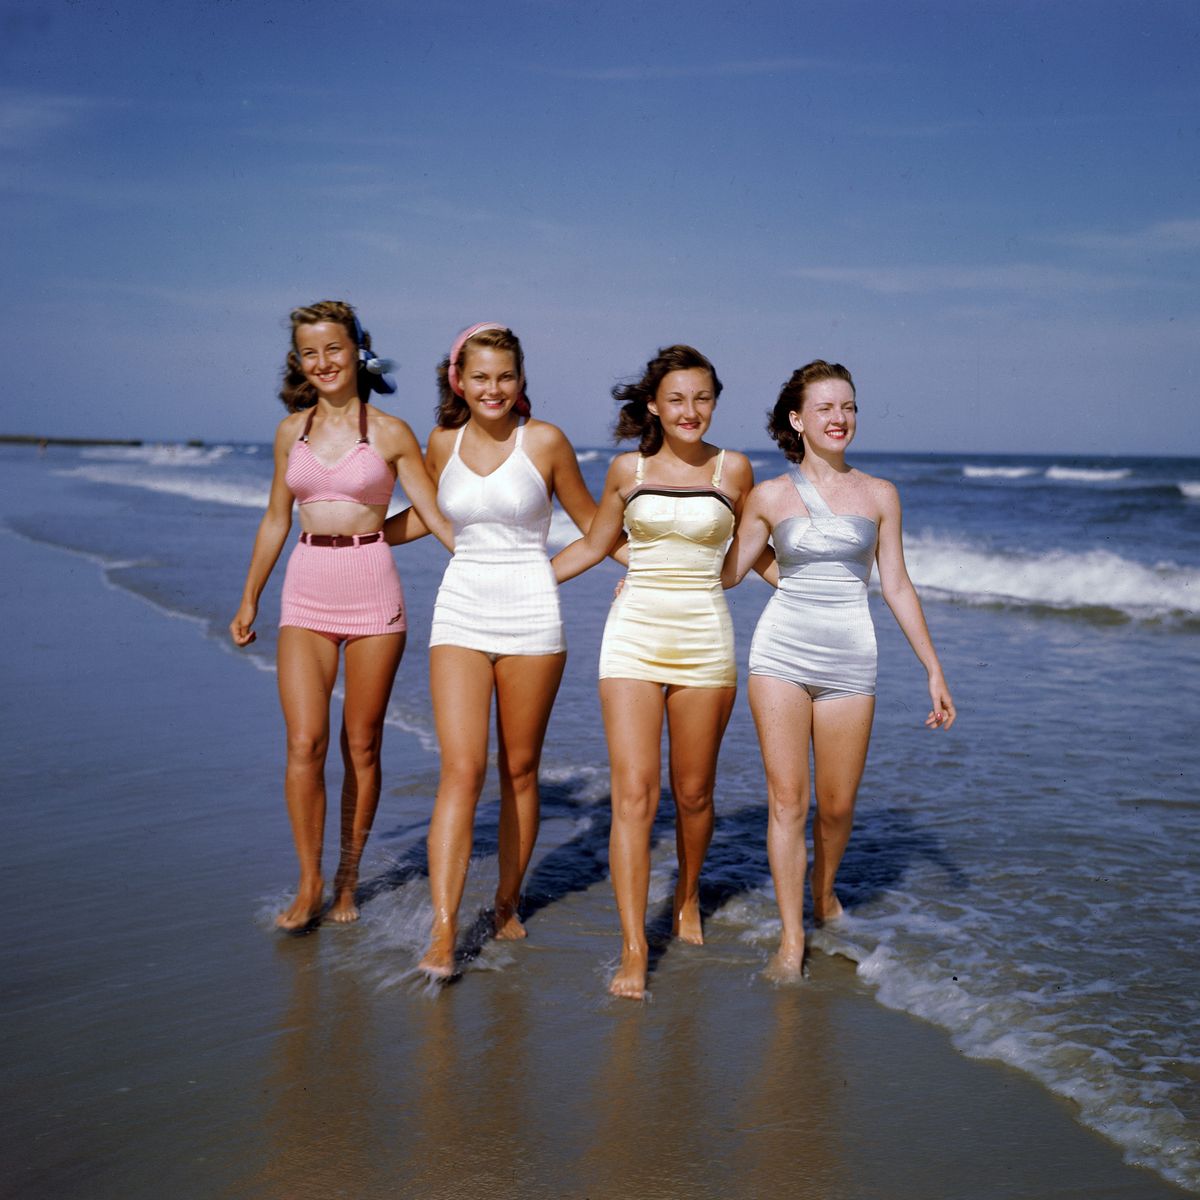 Девушки в купальниках гуляют на вечеринке в заливе